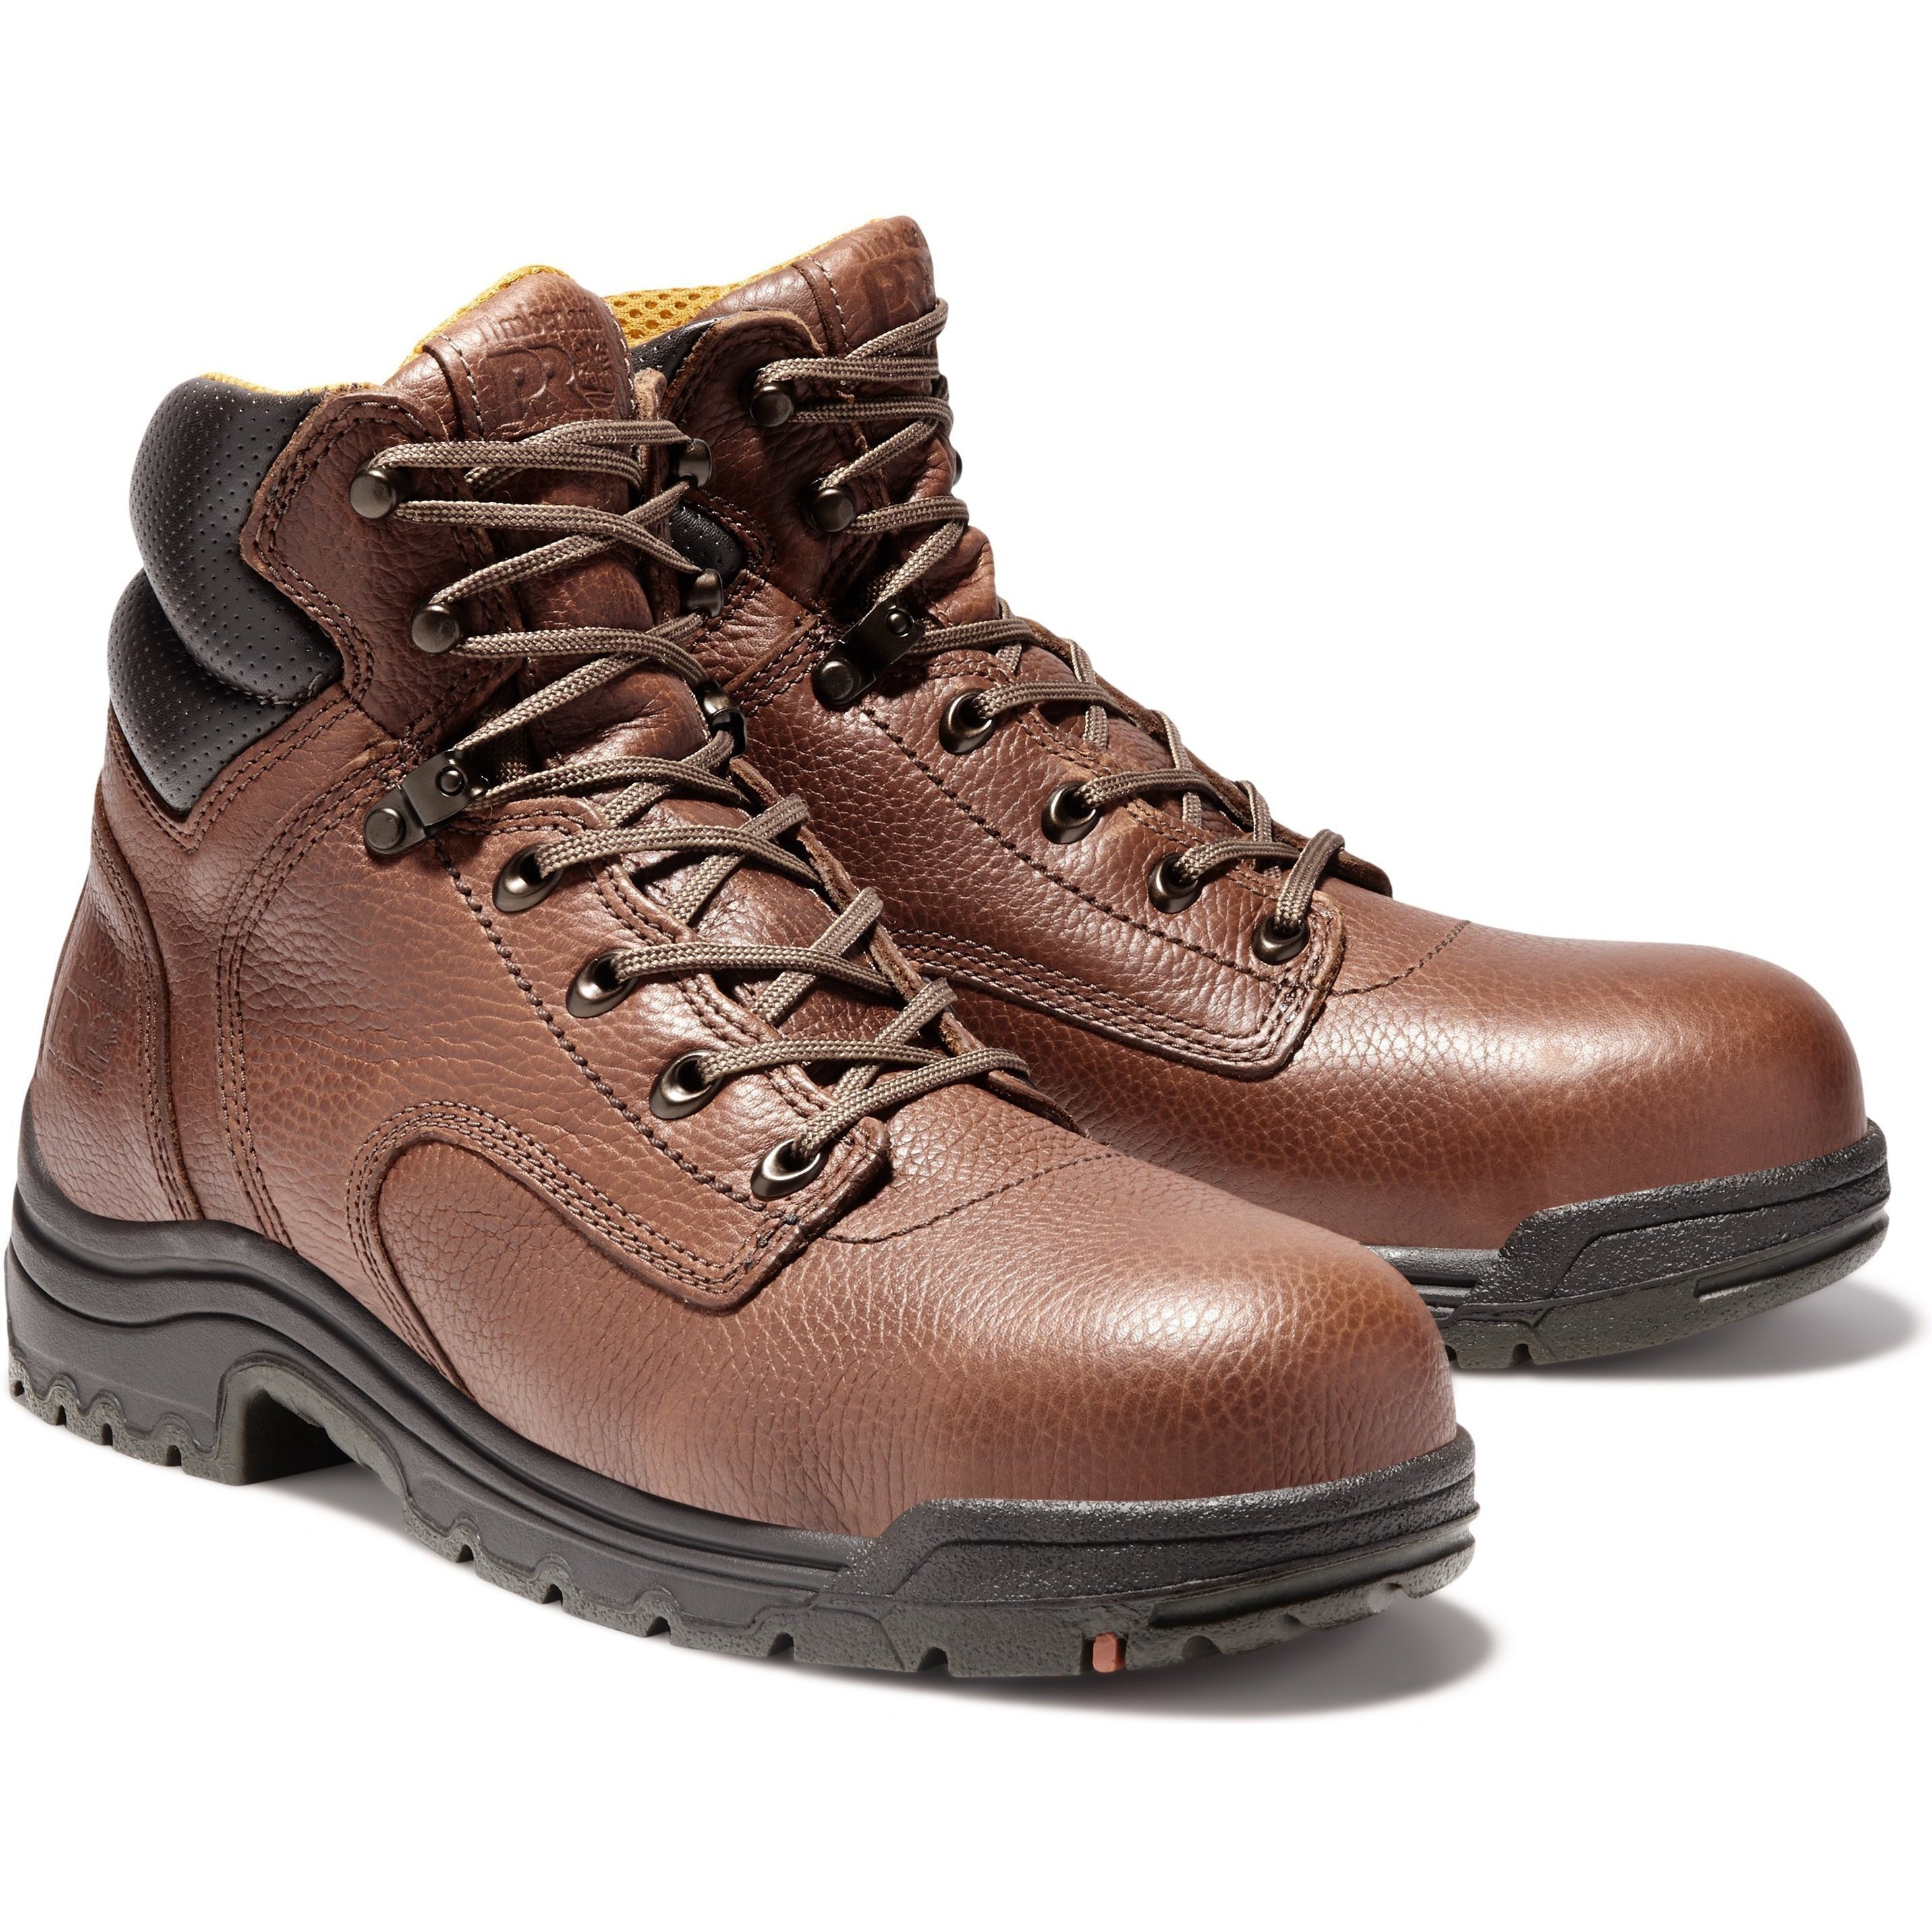 Timberland PRO Men's TiTAN 6" Alloy Toe Work Boot Coffee - TB026063214 6 / Medium - Overlook Boots